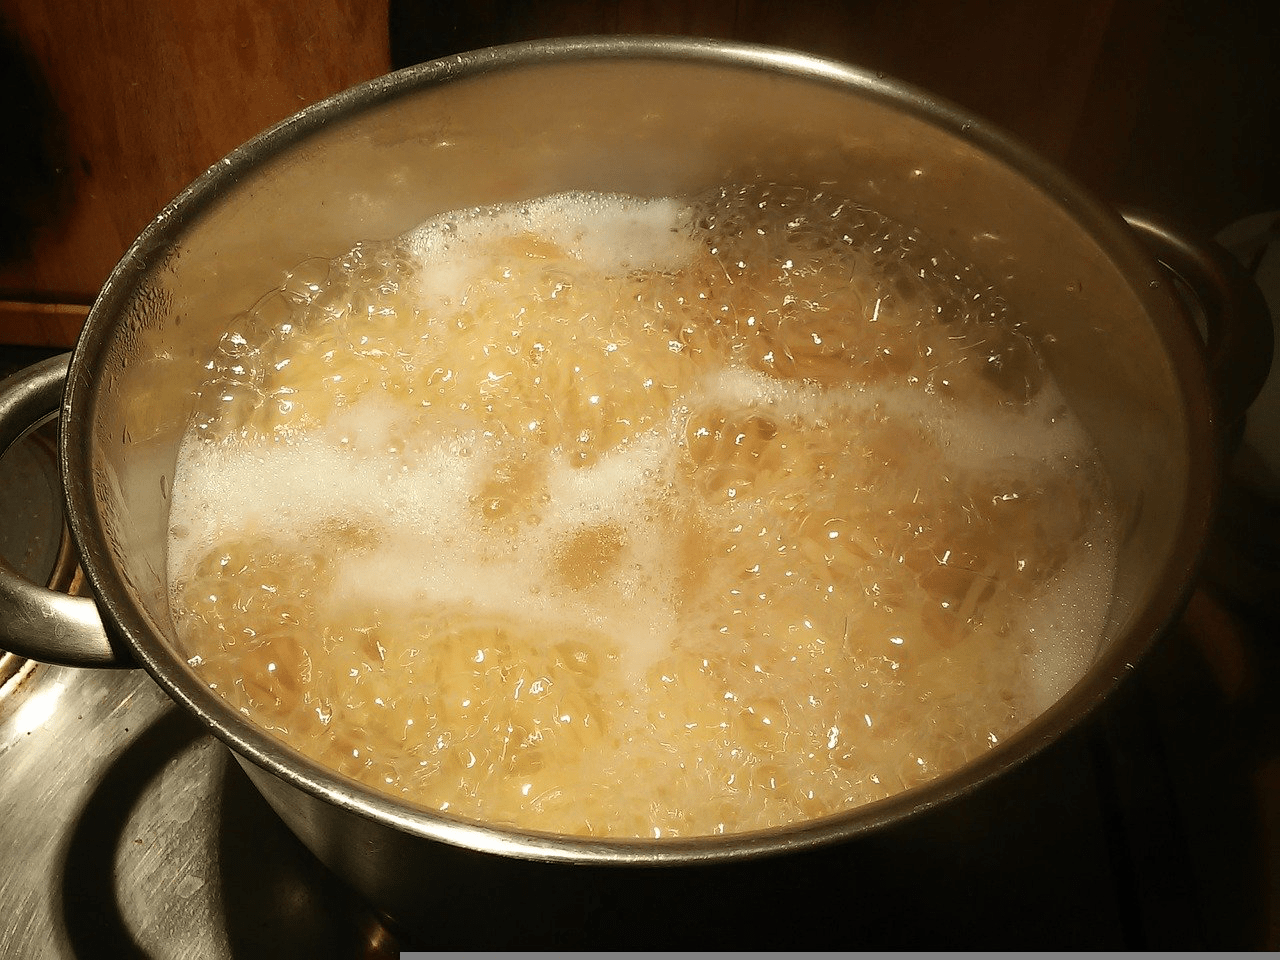 Nudeln kochen: Diese 7 Fehler ruinieren jede Pasta
Achte darauf, dass genÃ¼gend Wasser im Kochtopf ist, sonst kleben die Nudeln zusammen.
